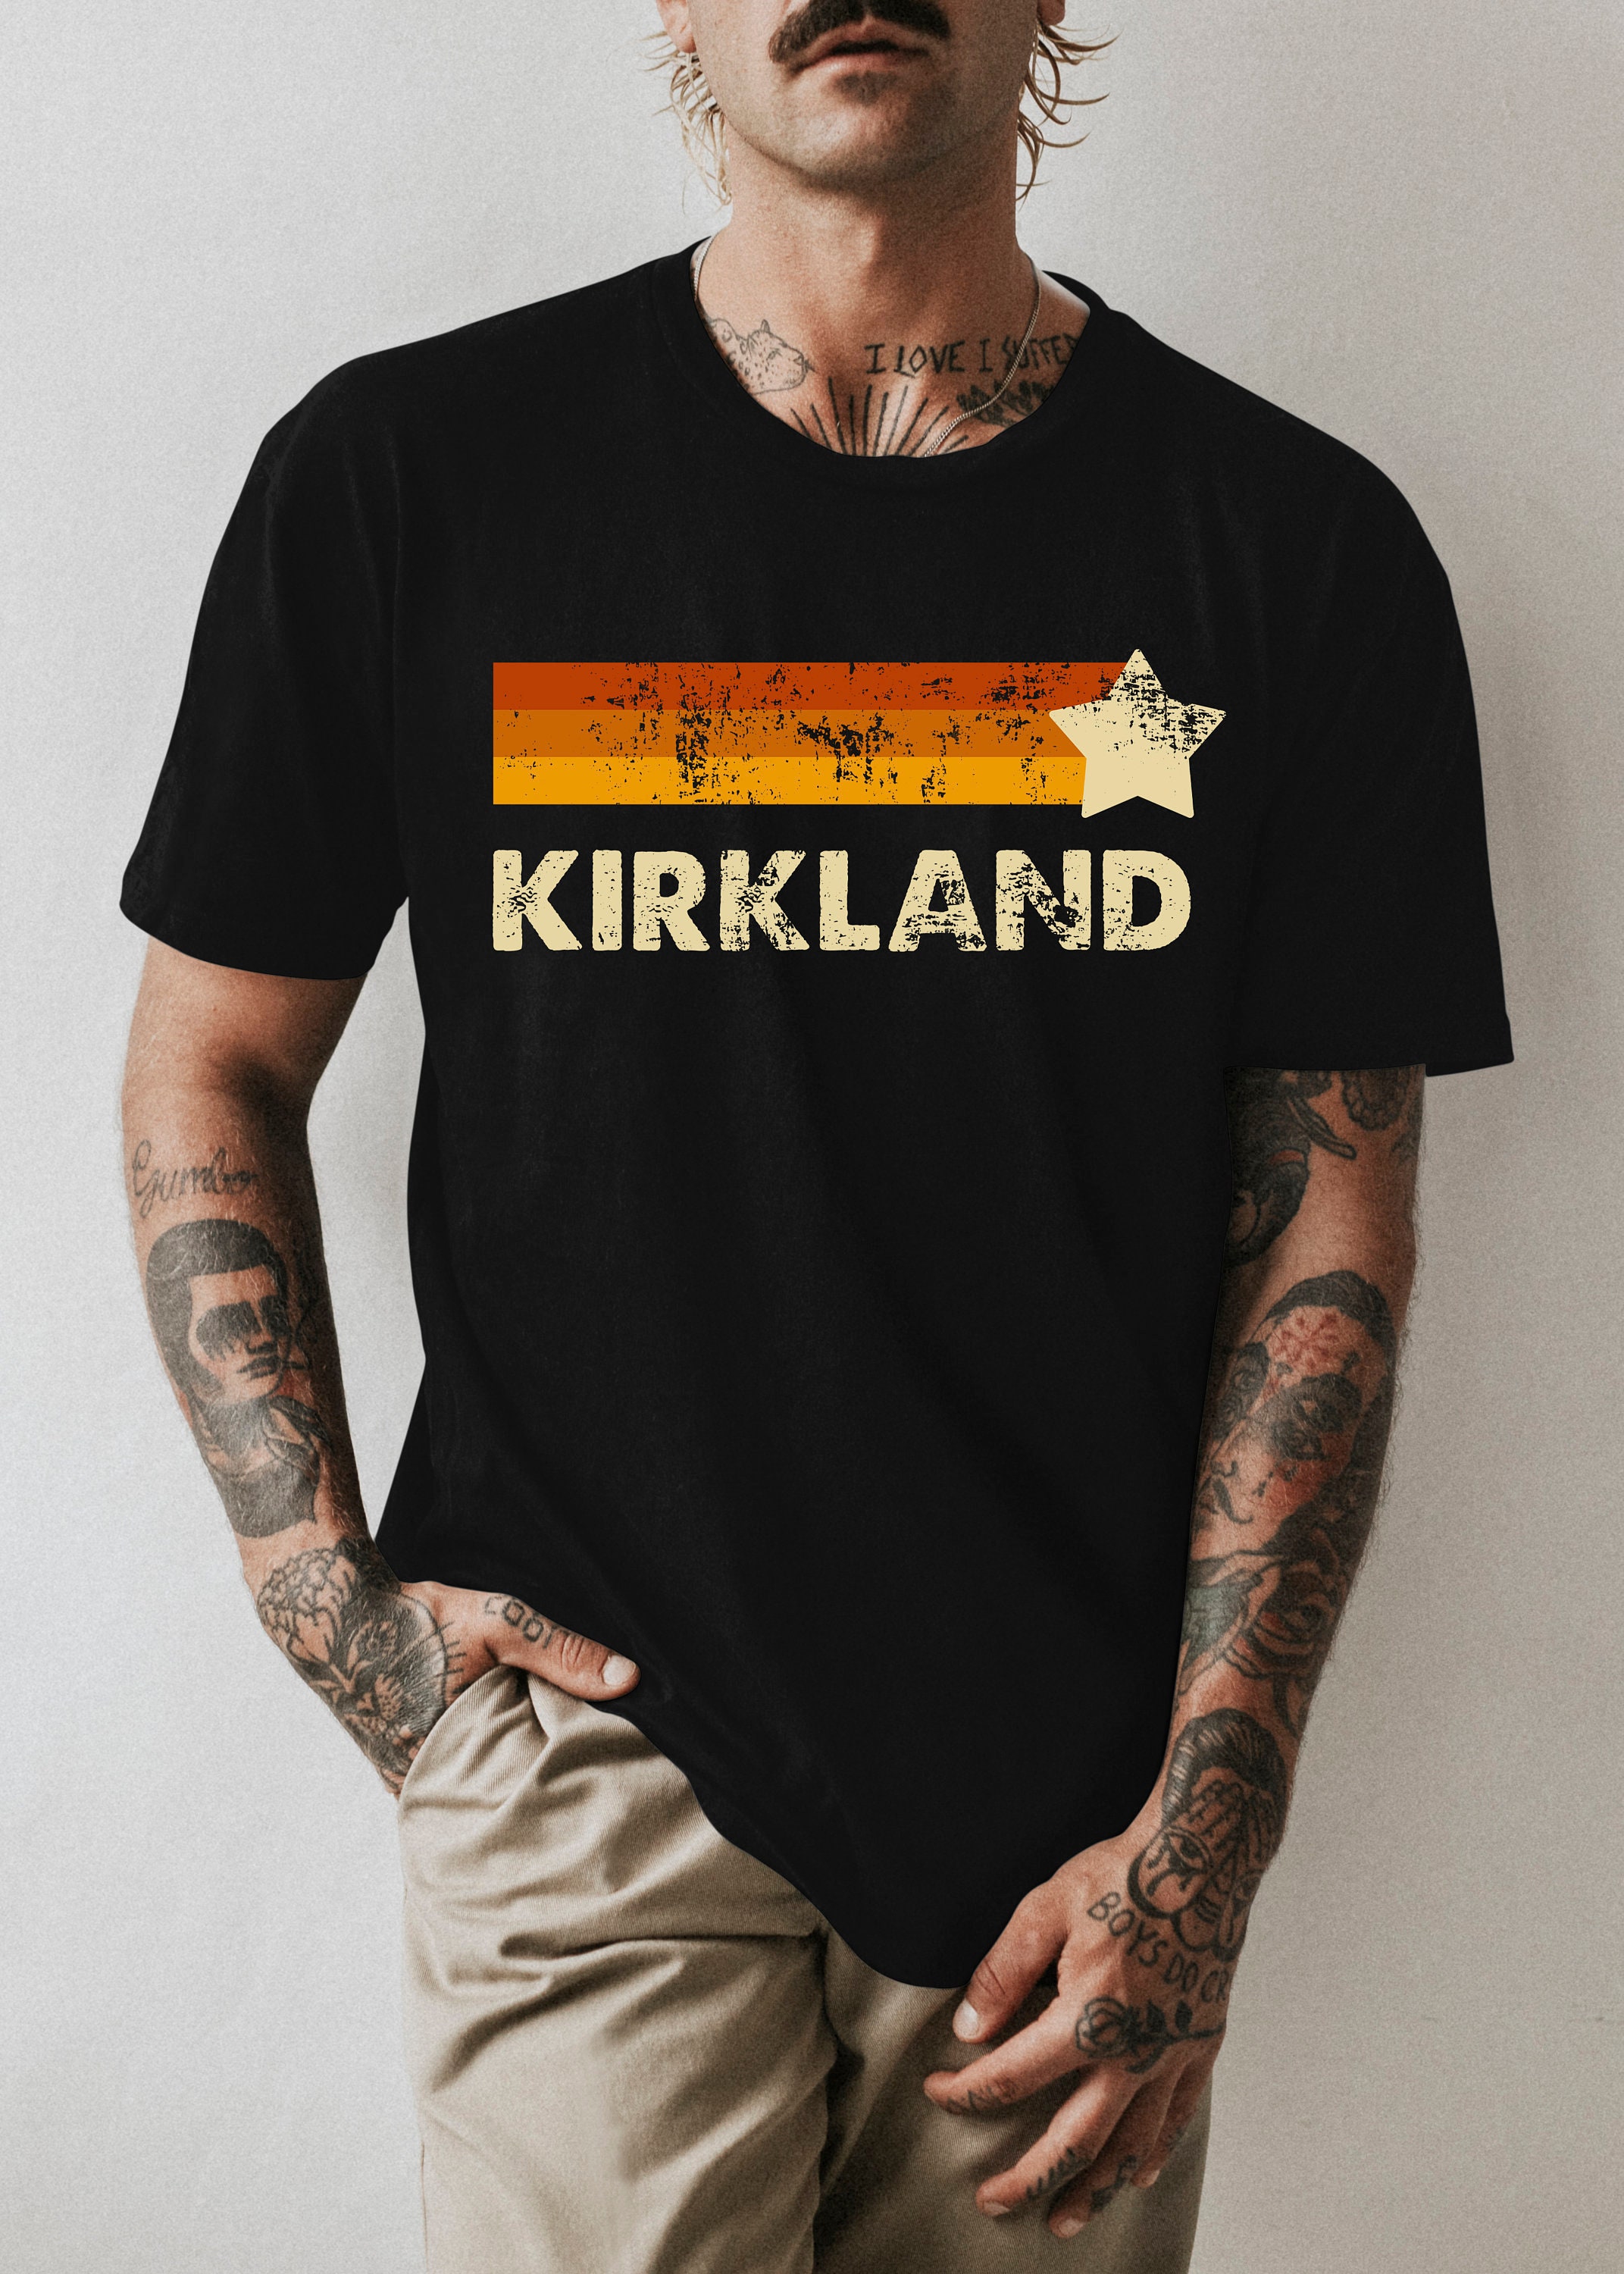 Kirkland Signature Sweatshirt For Sale - William Jacket